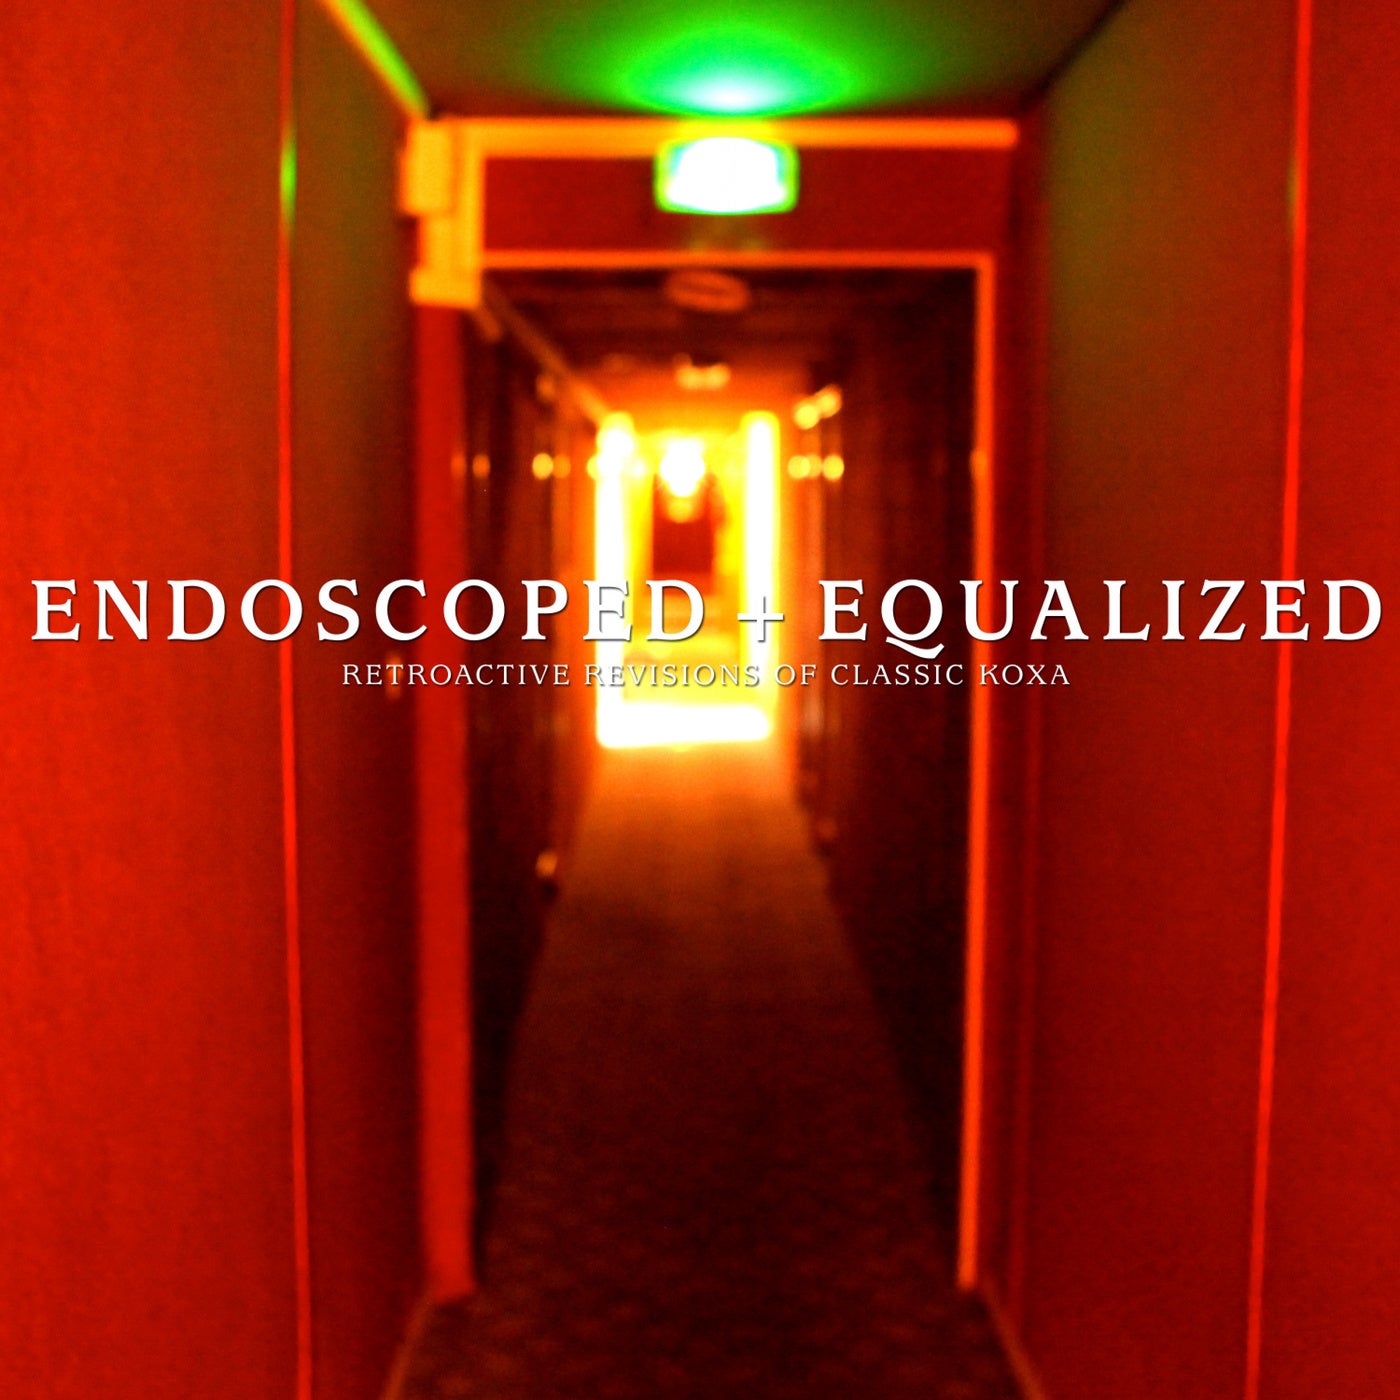 Endoscoped + Equalized